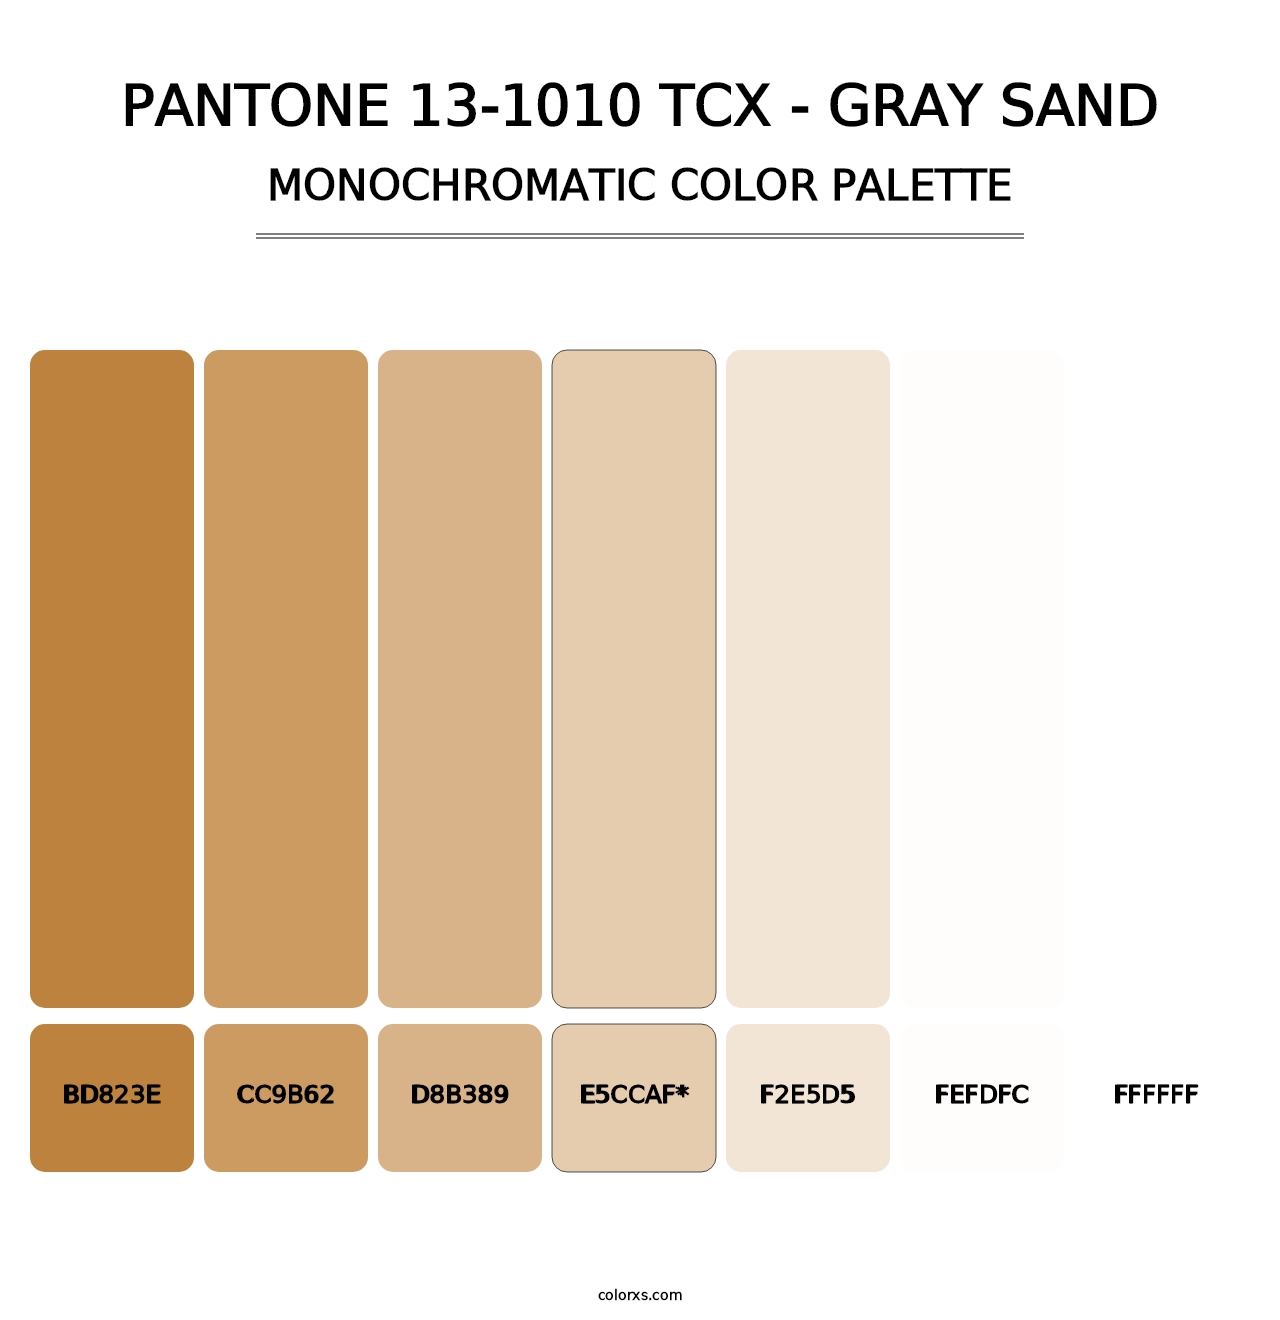 PANTONE 13-1010 TCX - Gray Sand - Monochromatic Color Palette